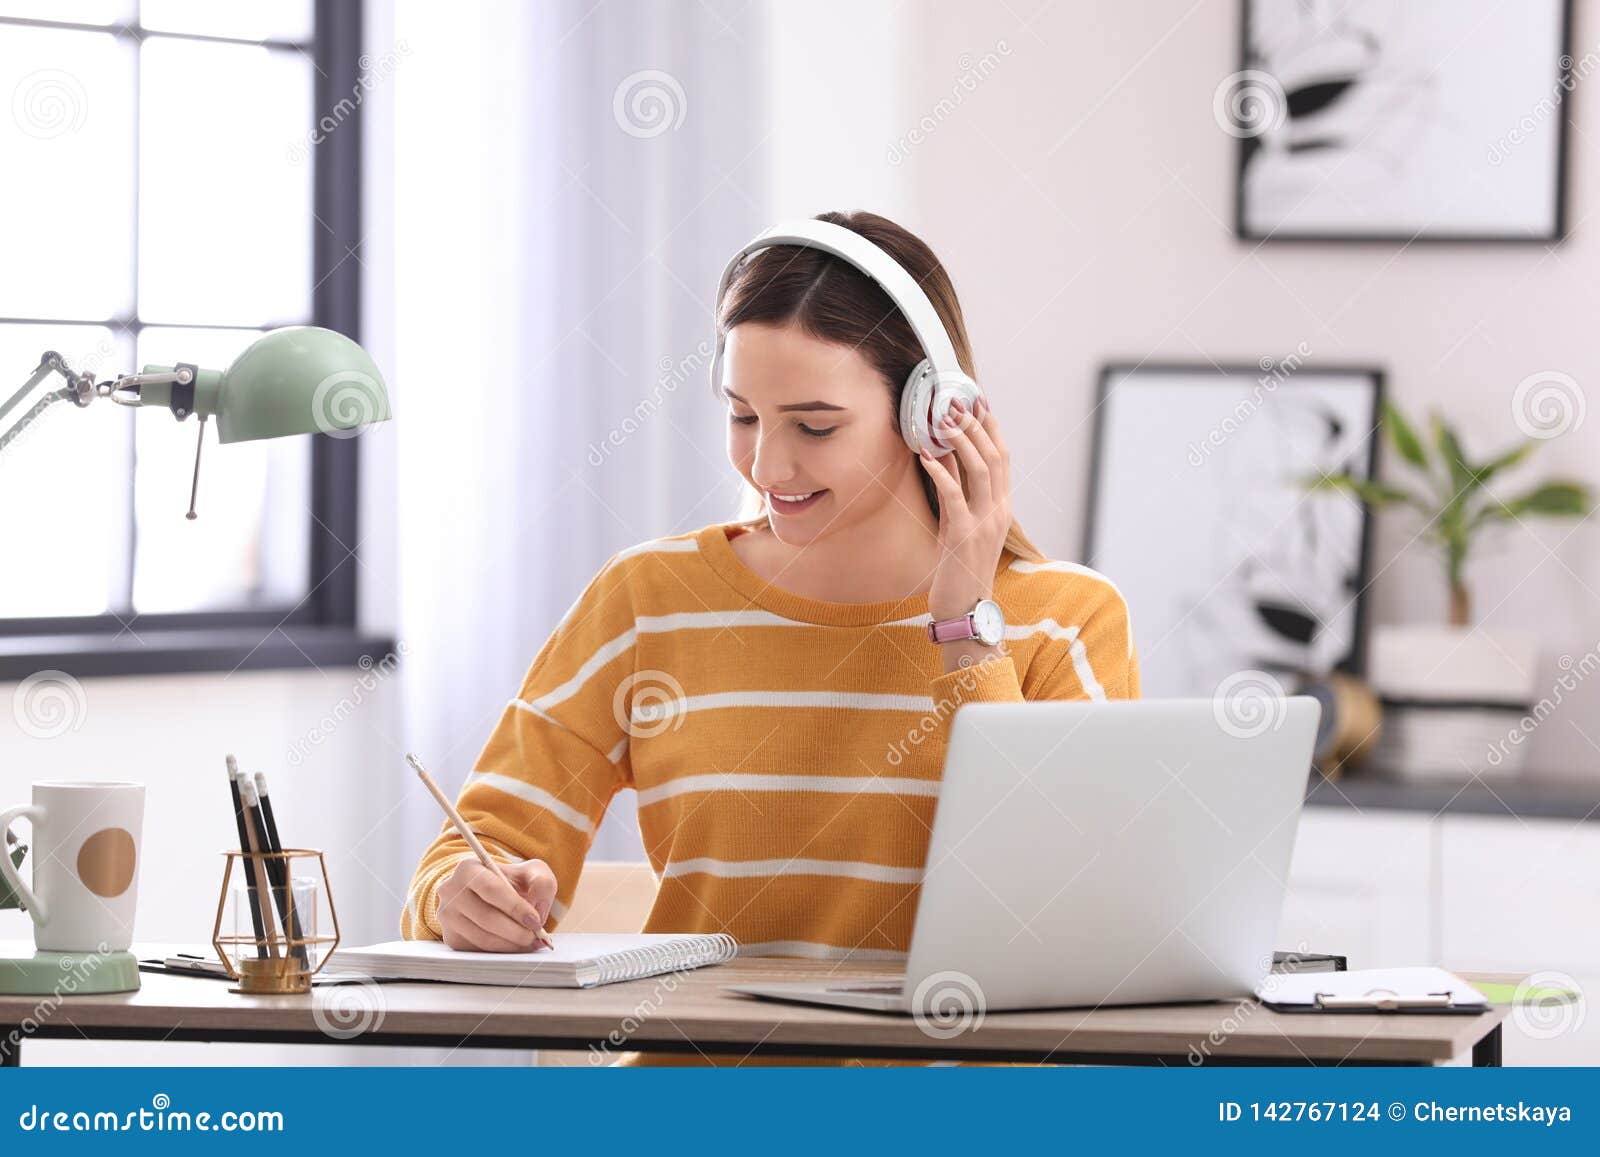 girl doing homework music